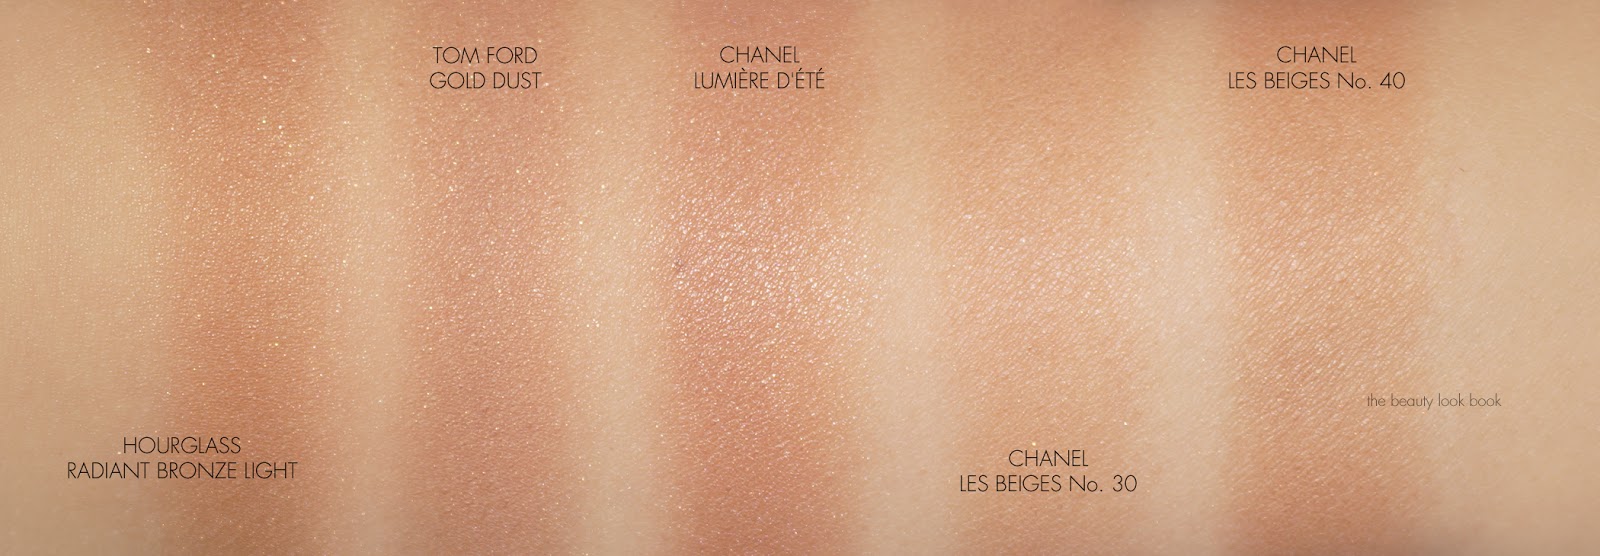 Chanel Summer 2015 Lumière d'été Bronzing Powder Promises to Be